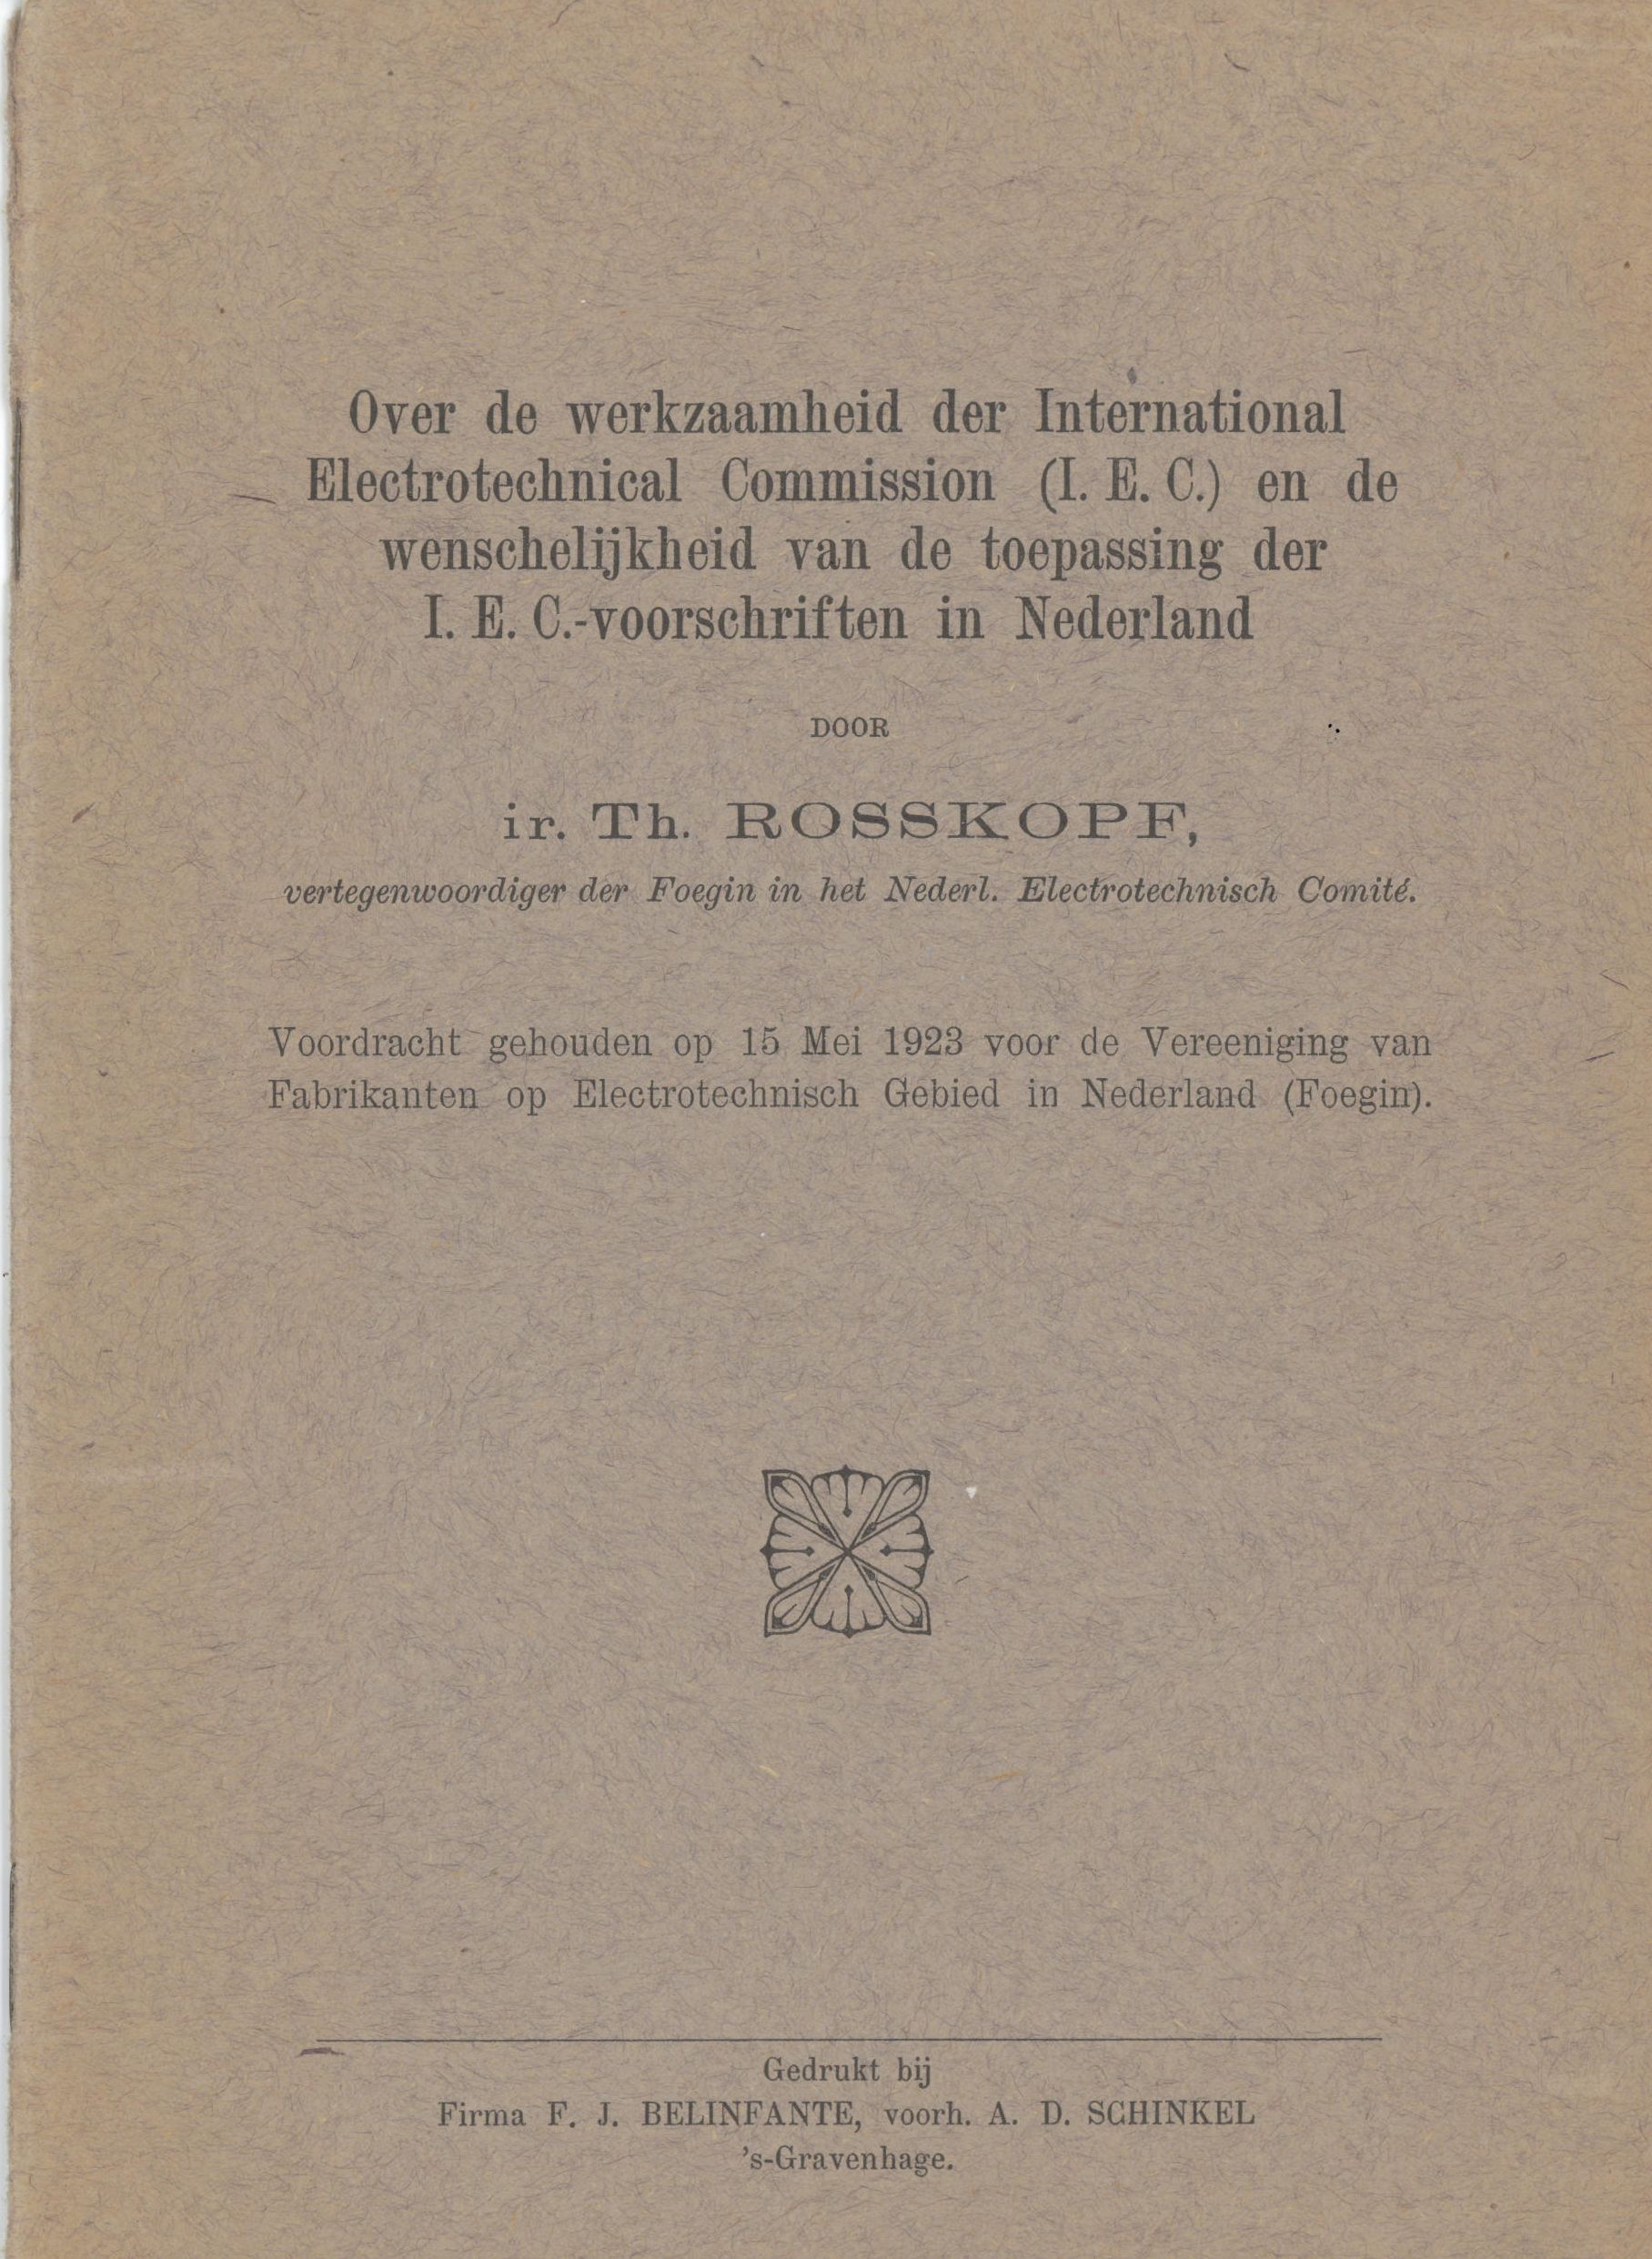 Voordracht FOEGIN IEC (1923)